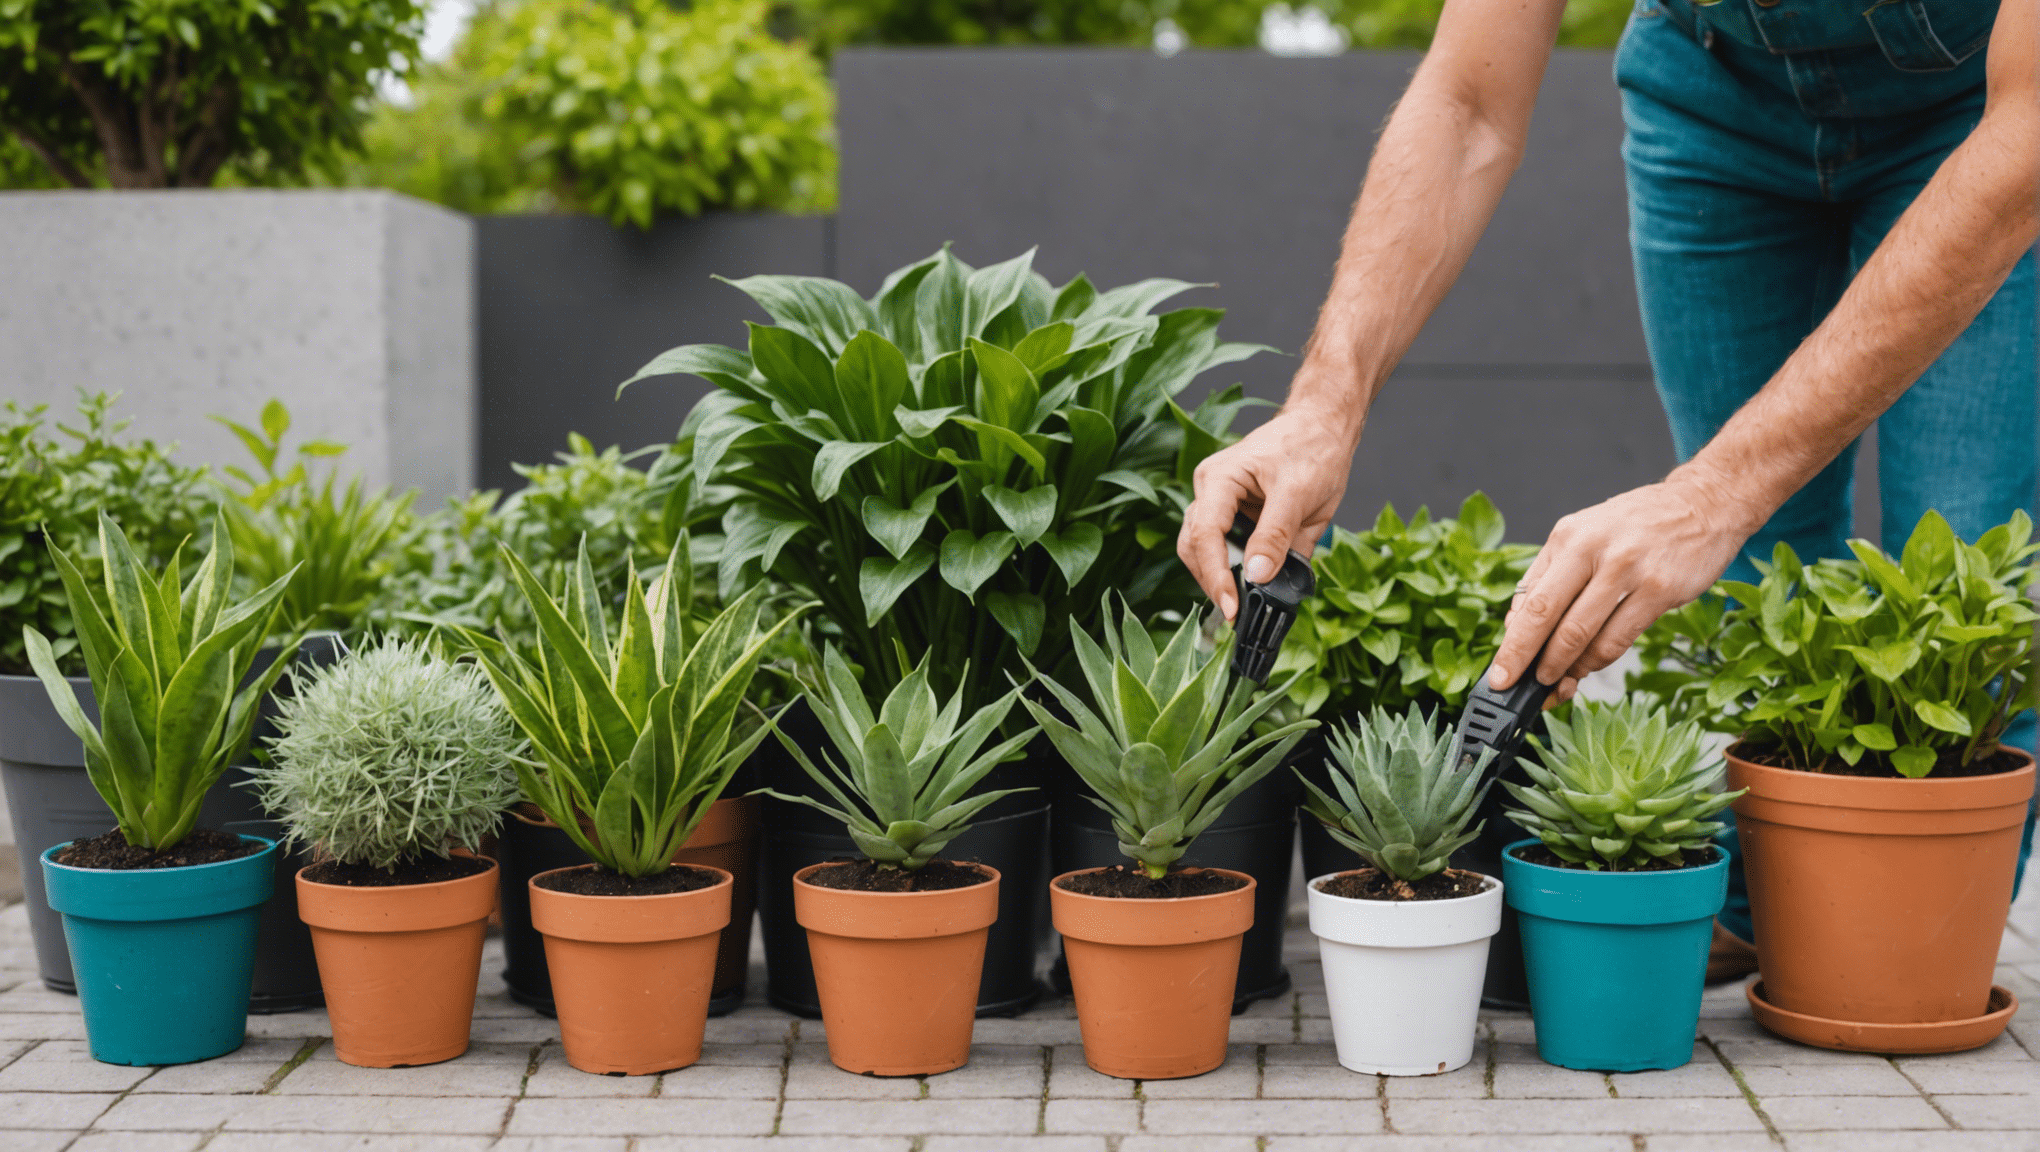 découvrez nos conseils pour bien arroser vos plantes et les garder en bonne santé toute l'année. astuces, fréquence, quantité d'eau : tout ce que vous devez savoir pour prendre soin de votre jardin.